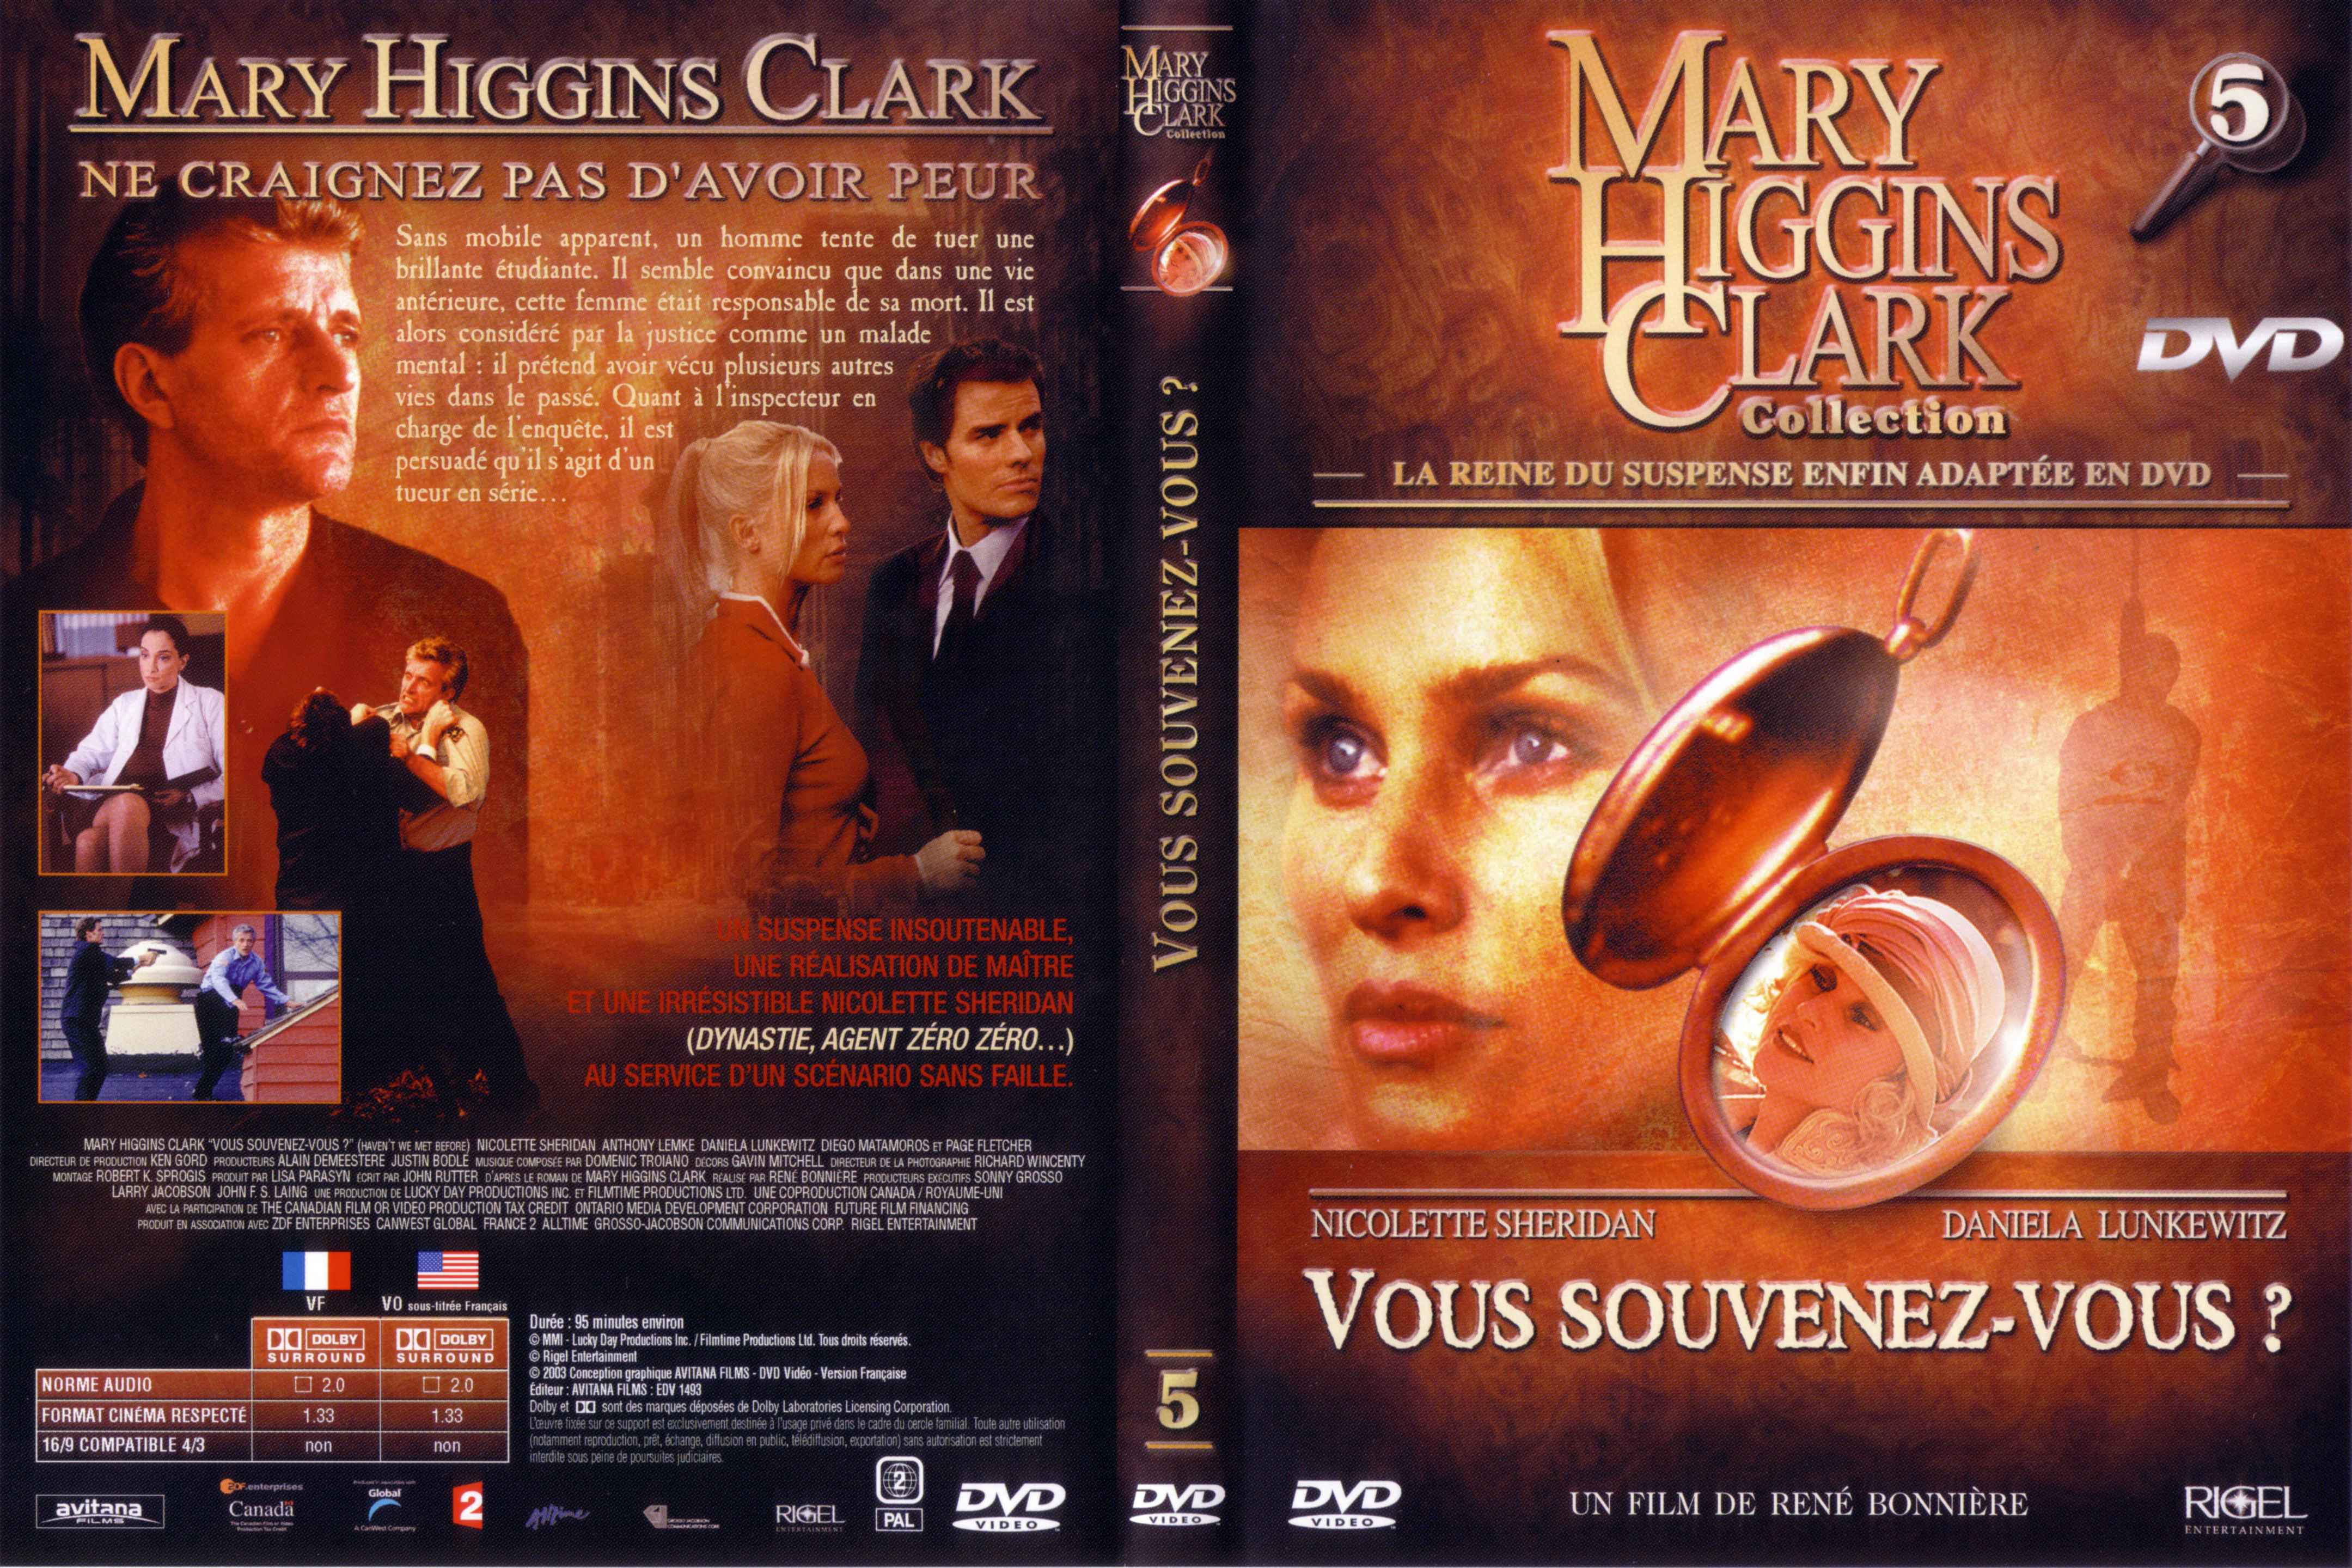 Jaquette DVD Mary Higgins Clark vol 05 - Vous souvenez vous